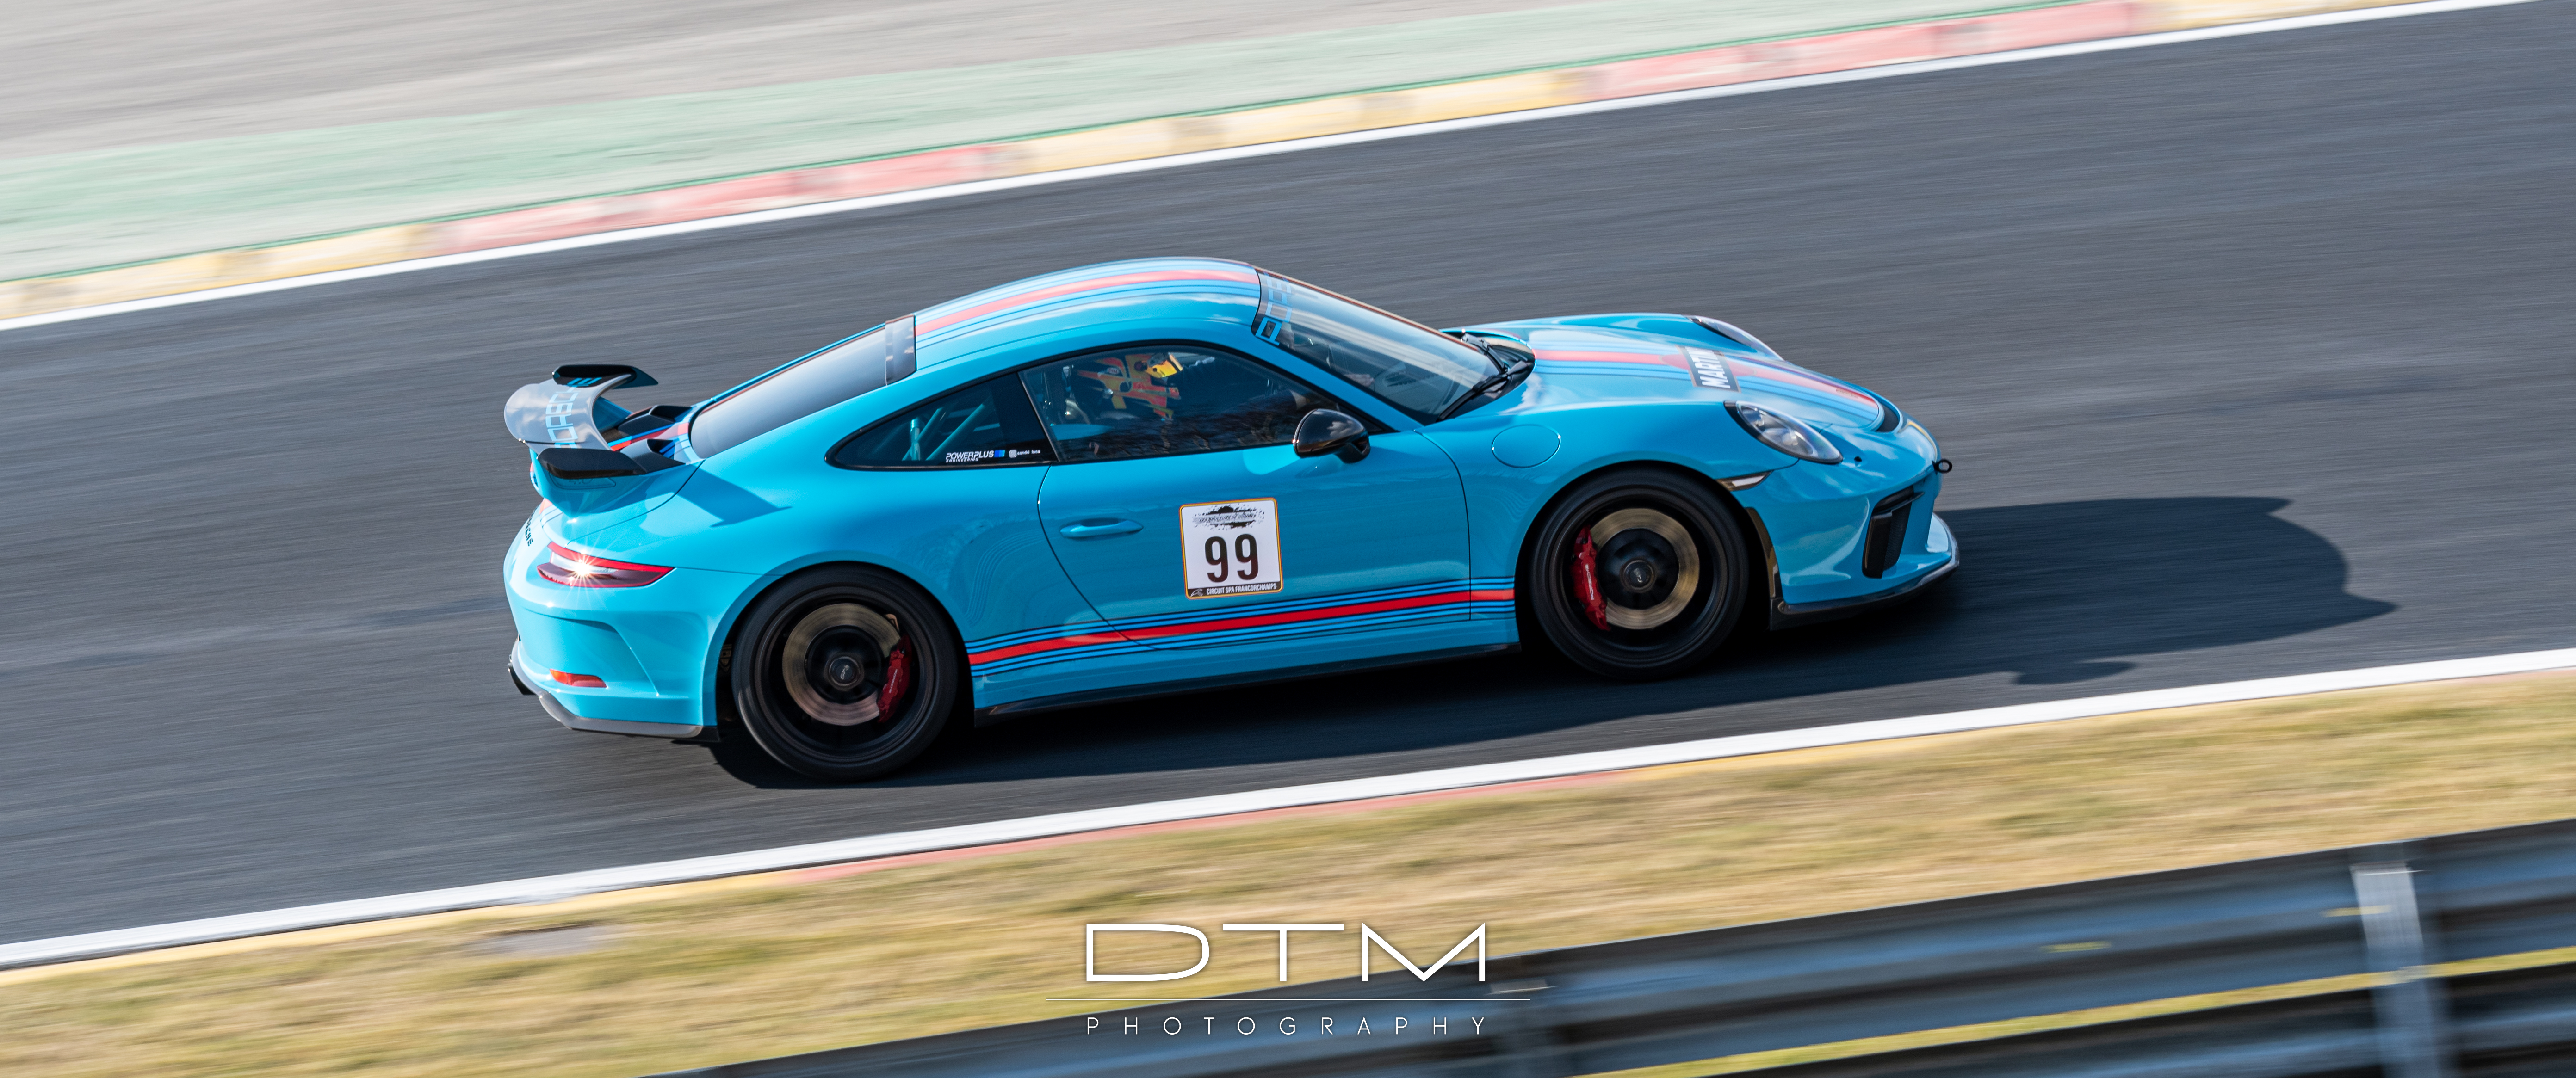 General 5568x2331 Porsche Porsche 911 Porsche 991.2 GT3 Spa-Francorchamps dtm photography car vehicle race tracks racing motorsport blue cars